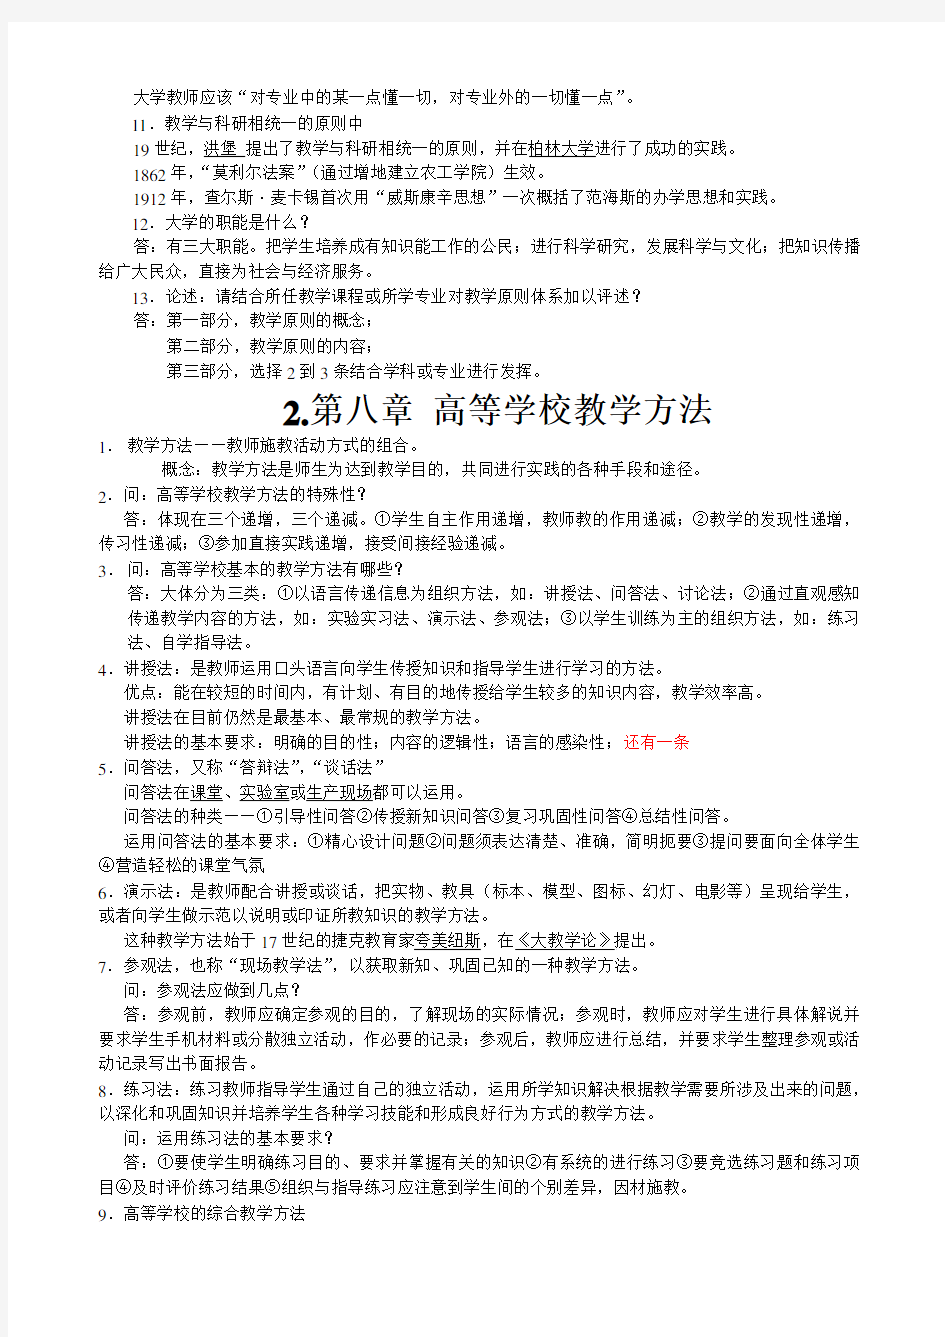 江苏省高等学校教师资格证考试-教育学 考试题型及章节重点